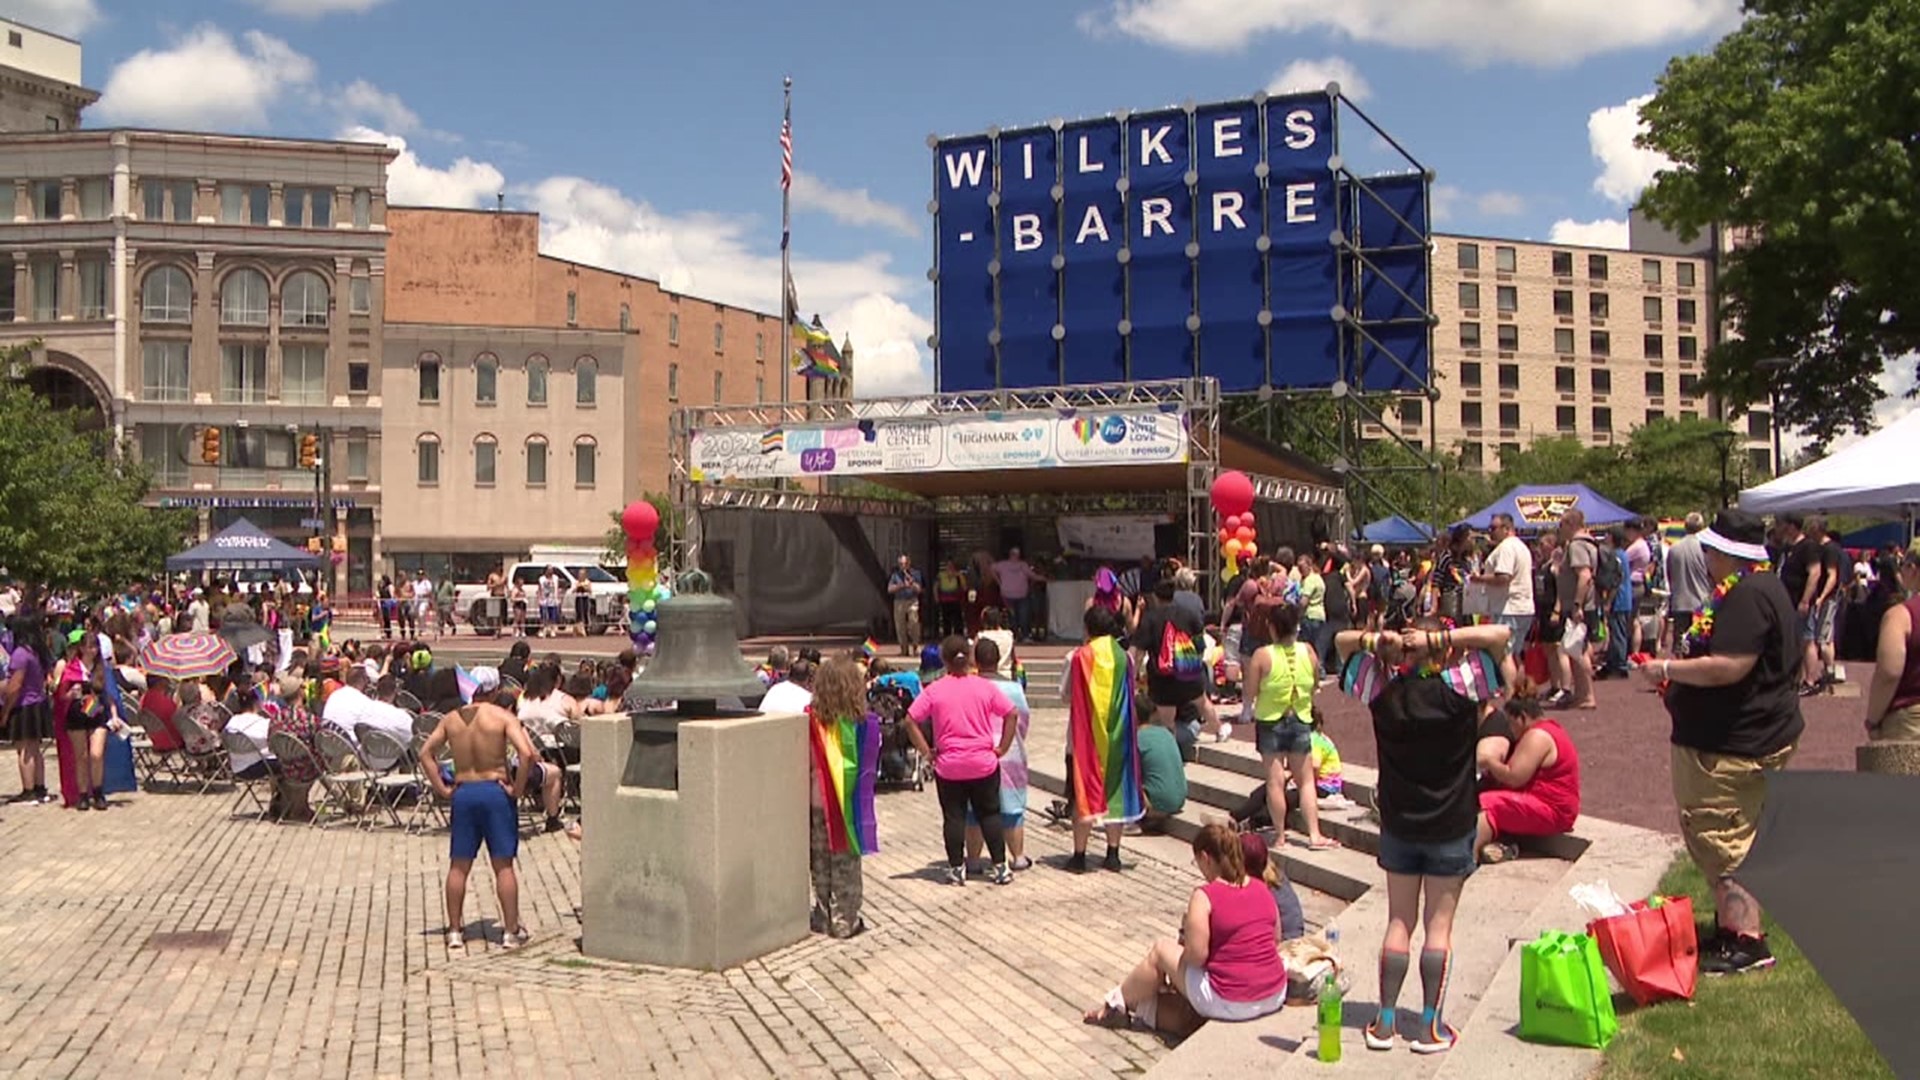 PrideFest held in WilkesBarre